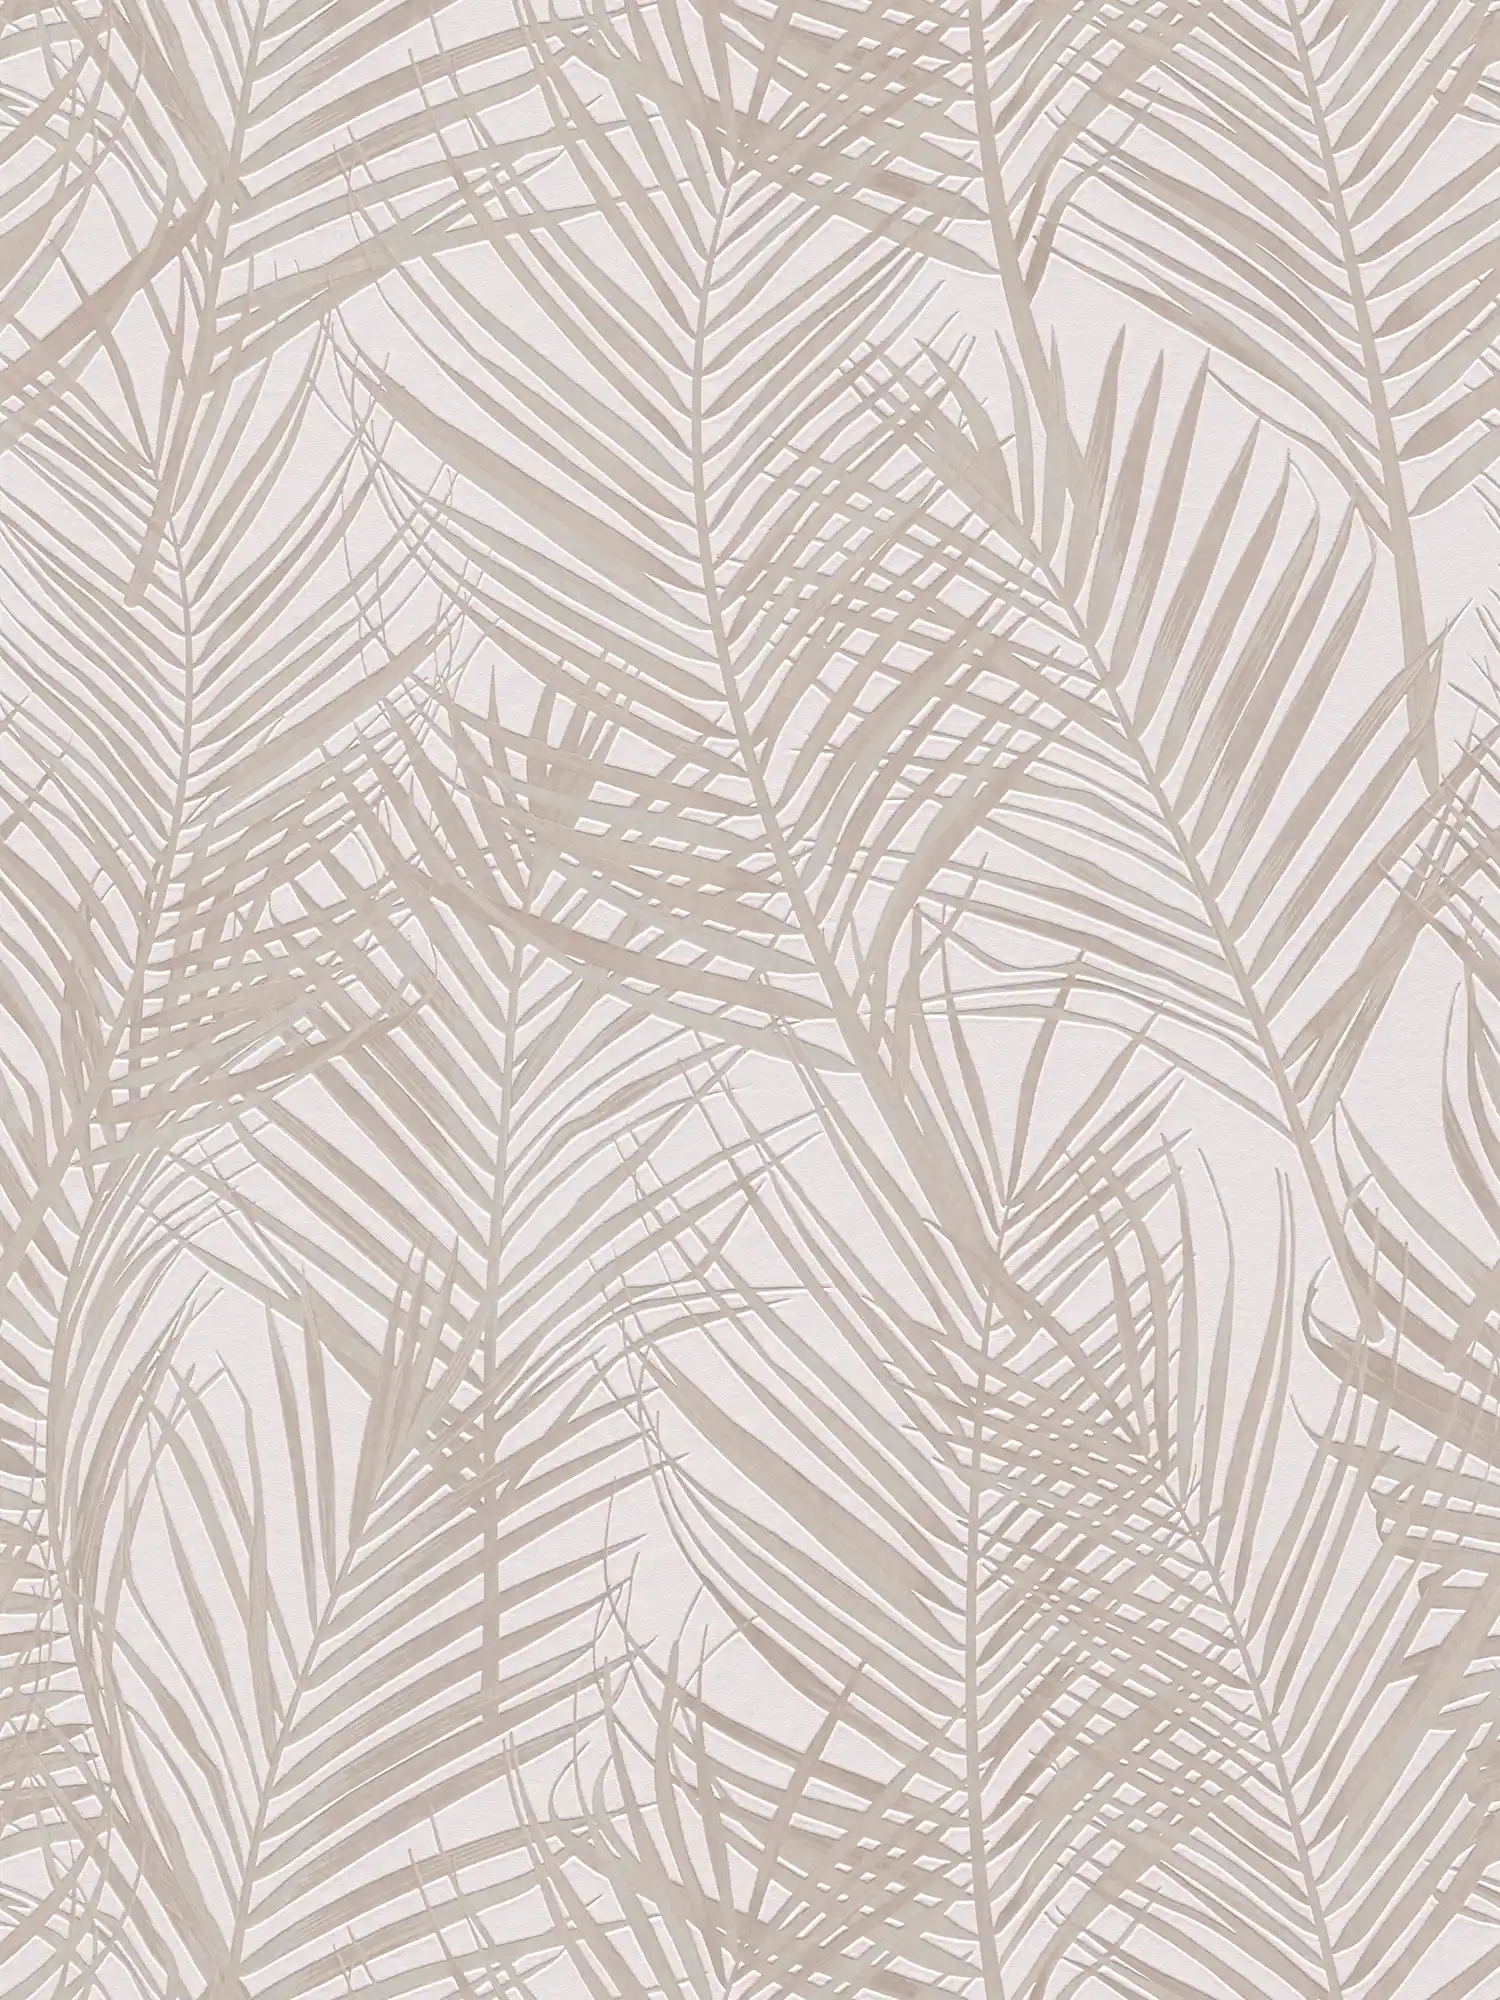 Patroonbehang met palmbladeren in mat - wit, crème
